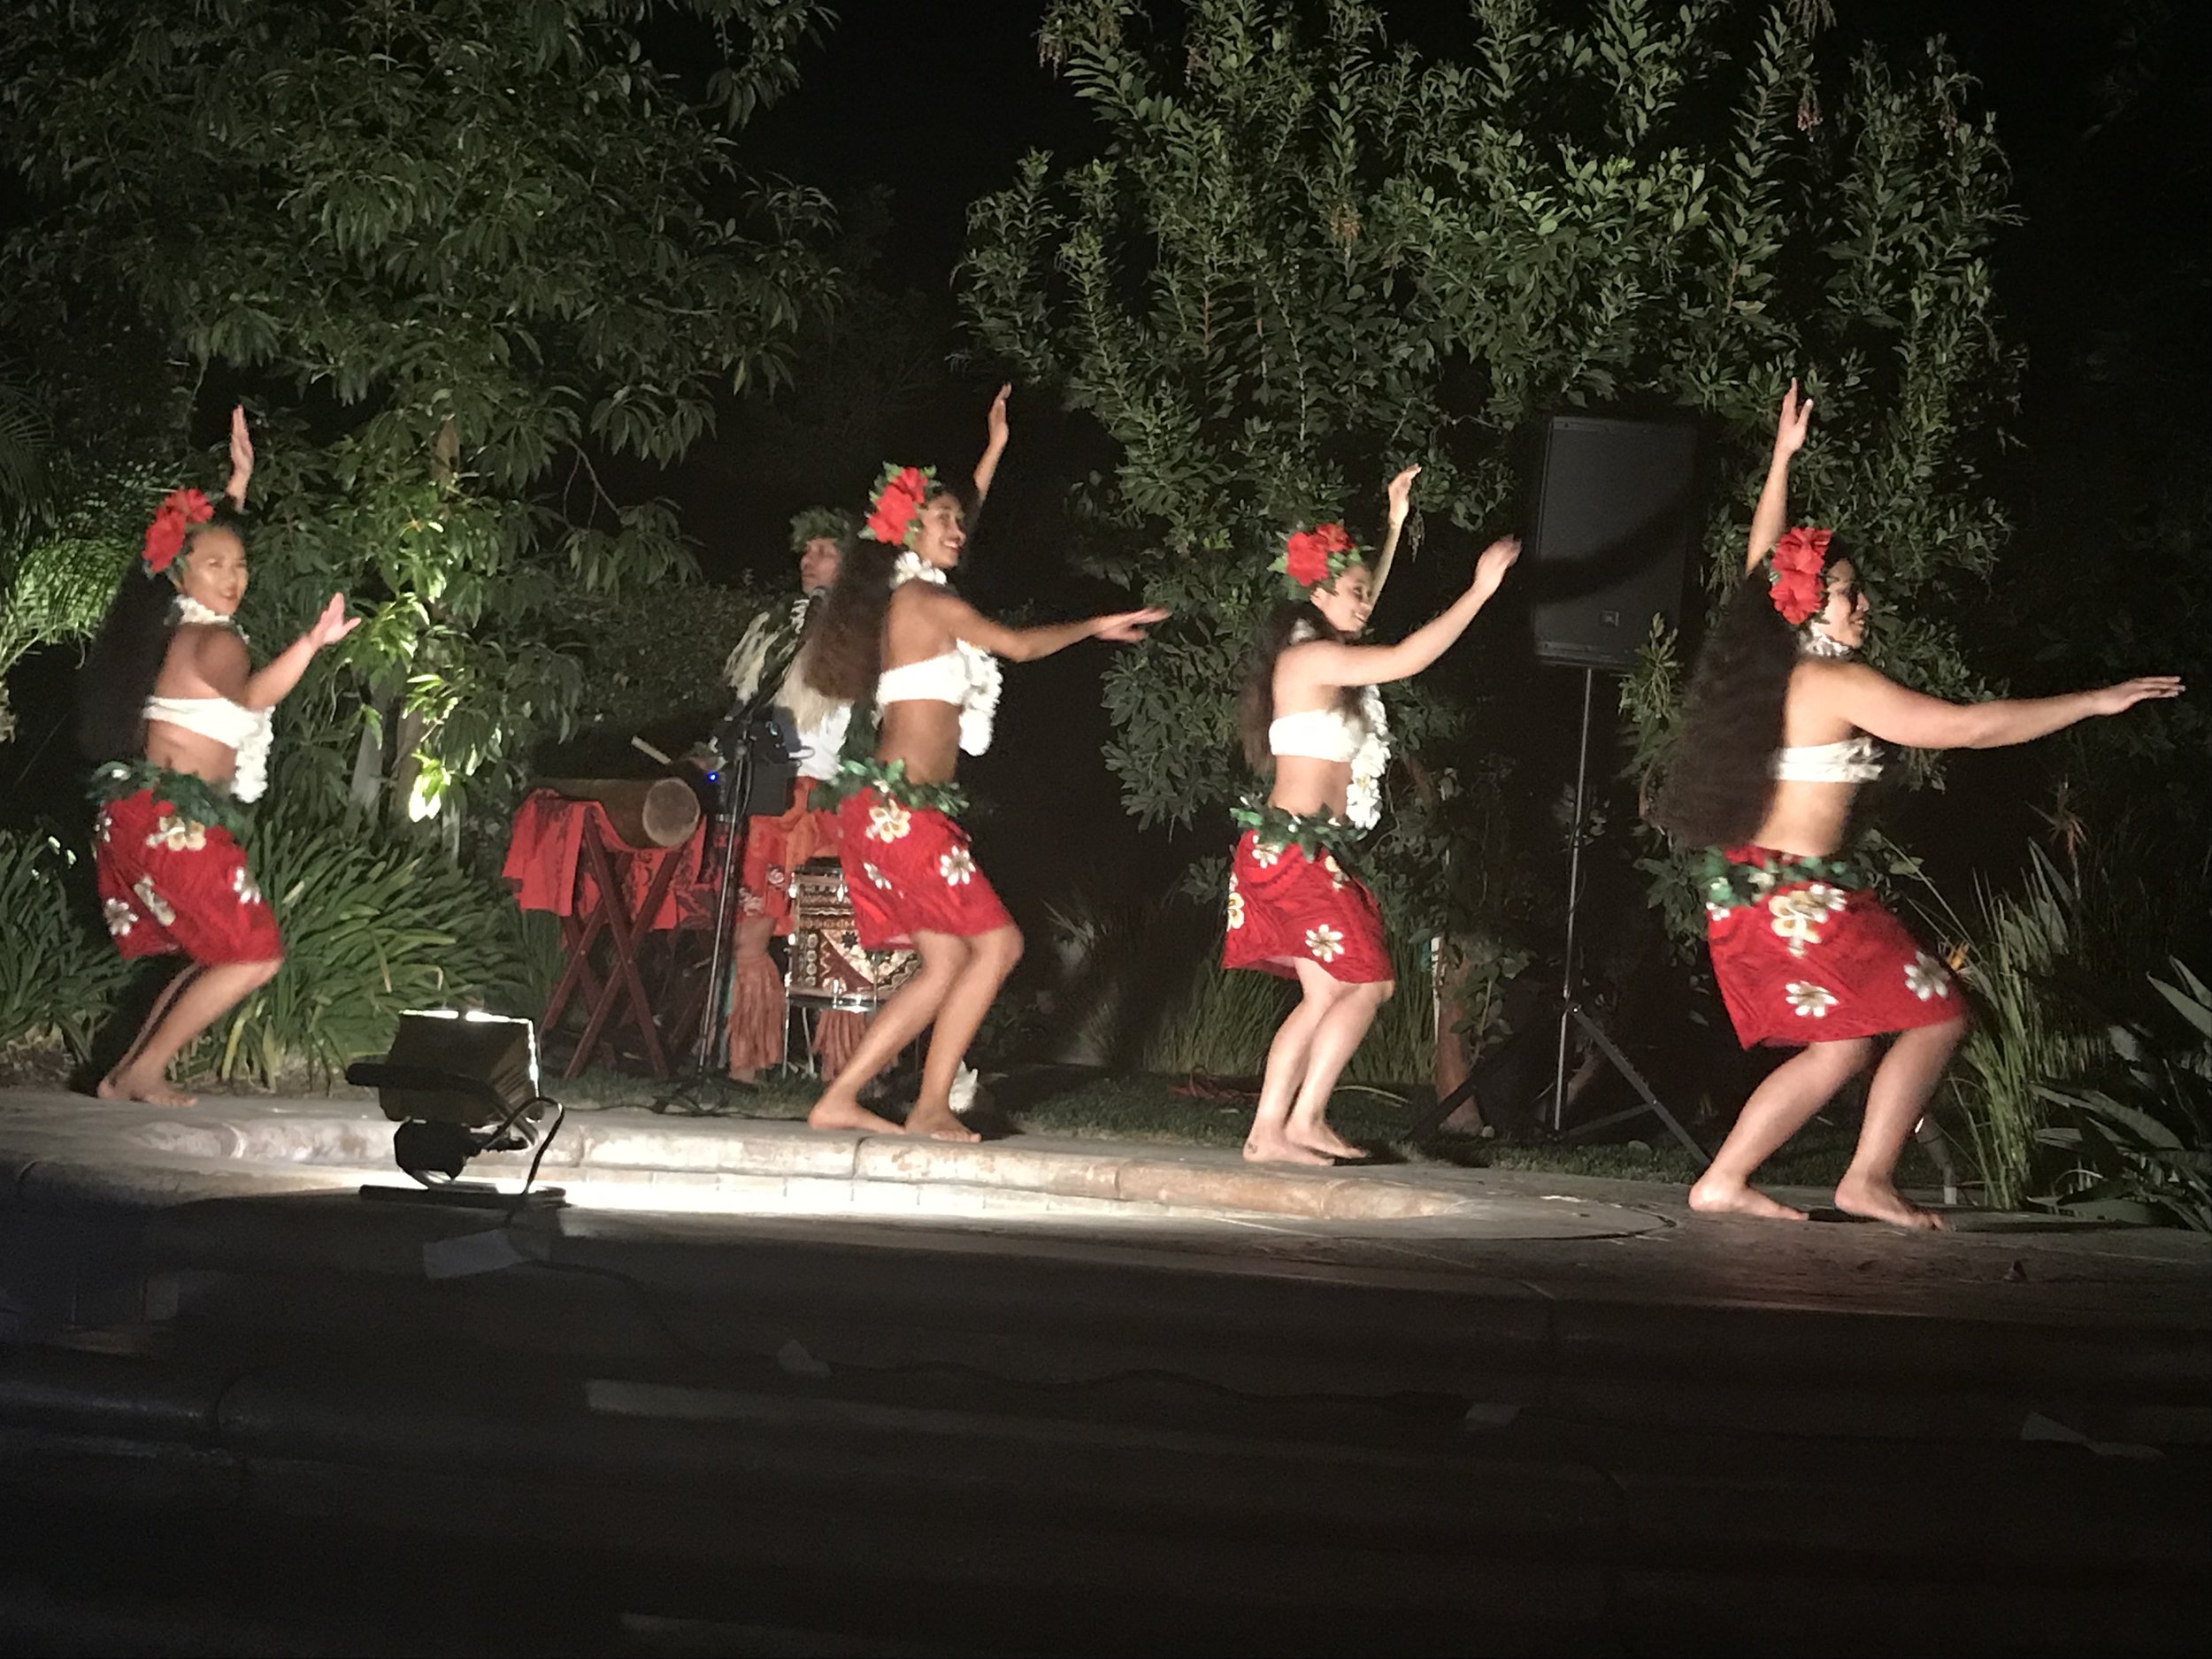 Hawaiian Dancers & Entertainment — Islanders Luau